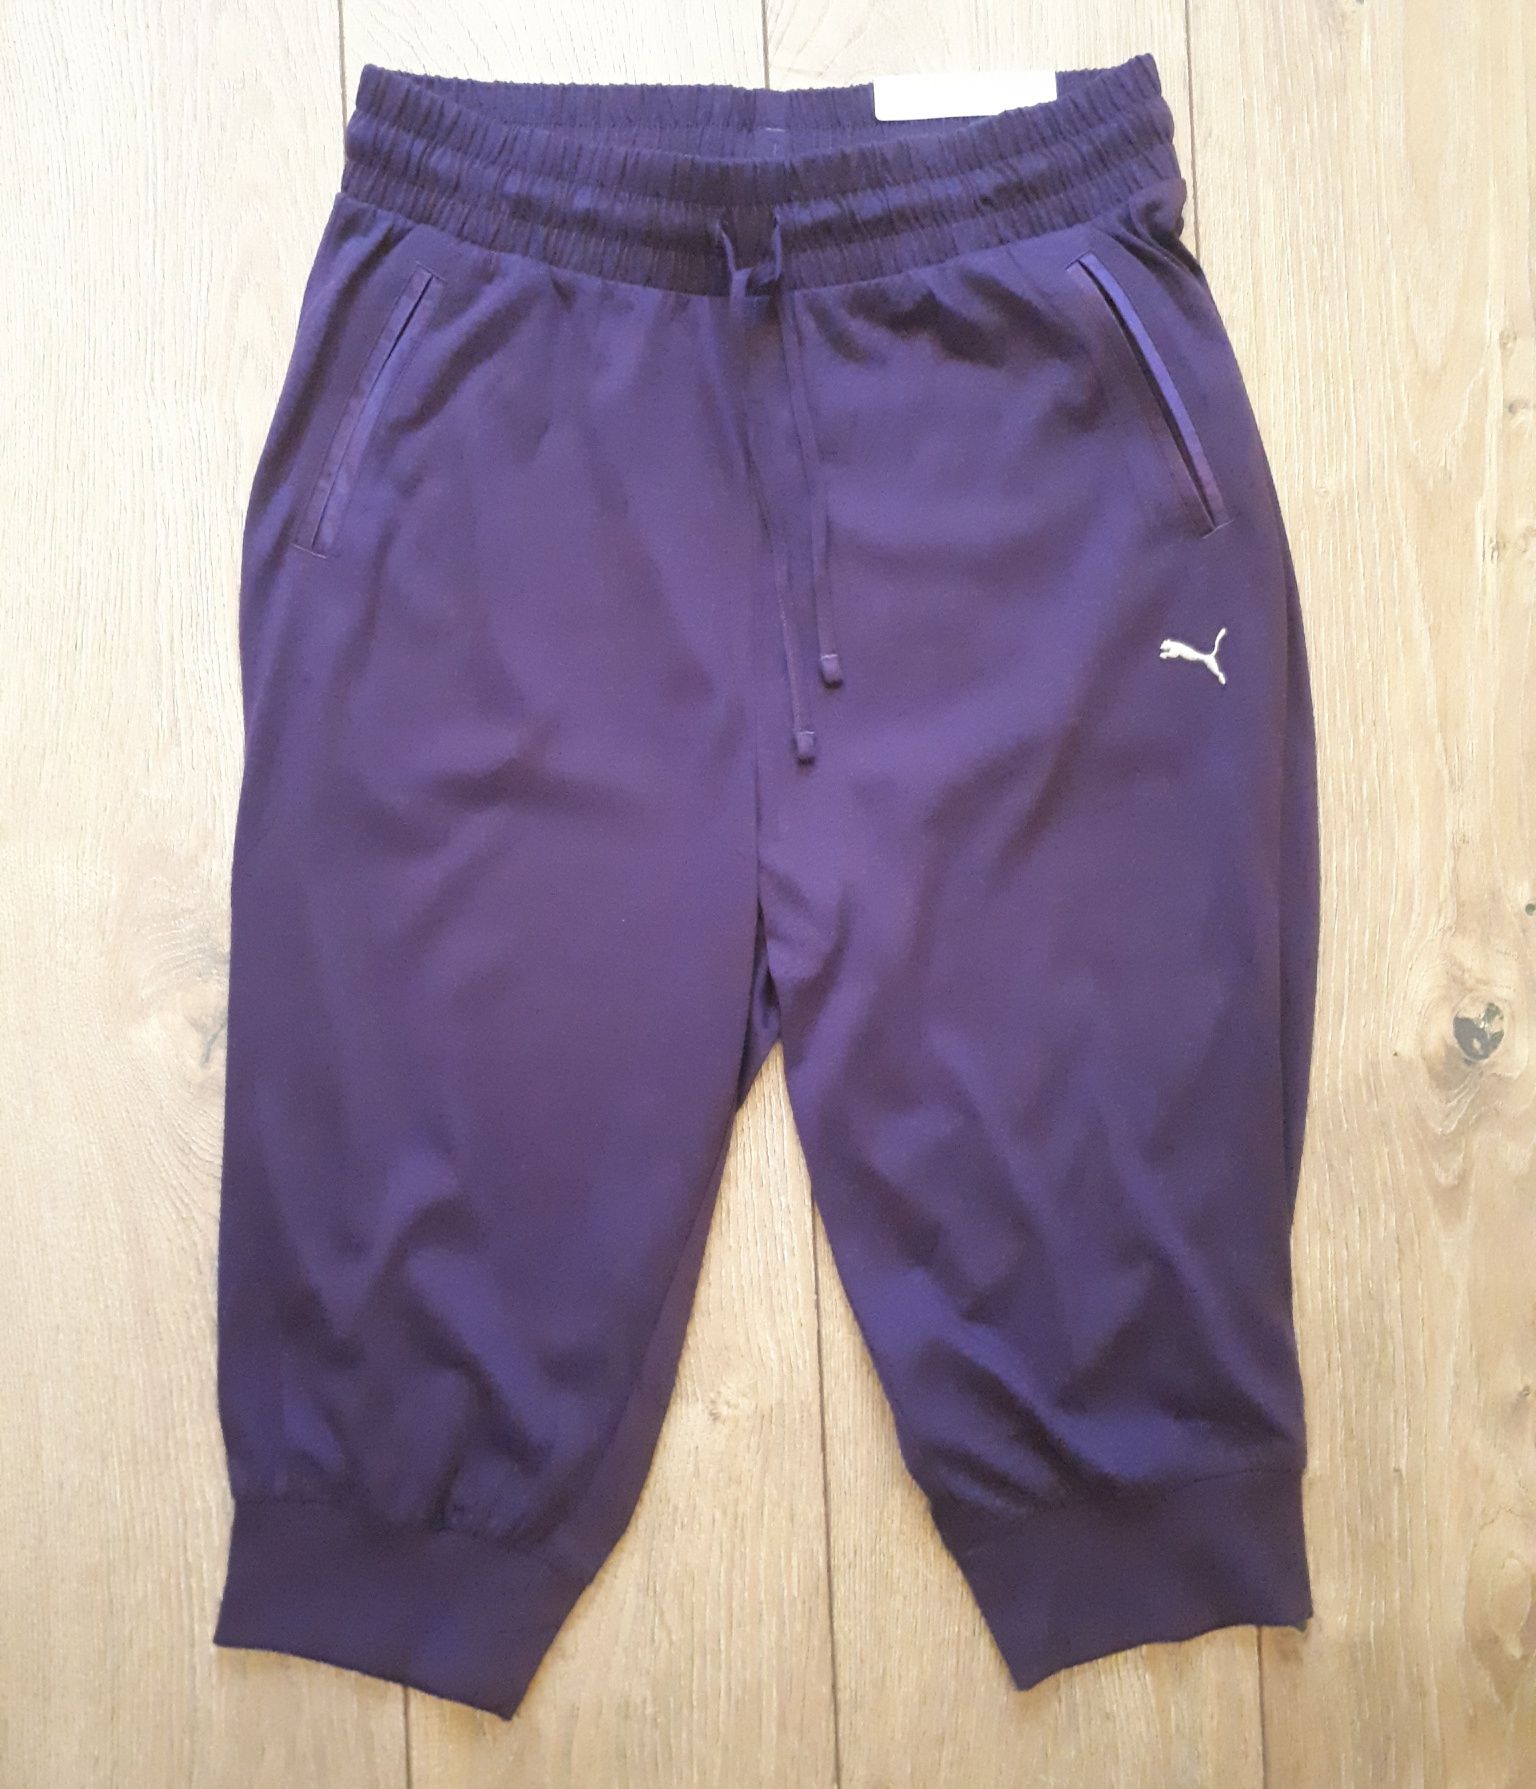 Spodnie Puma 36/38 fiolet, w stylu pumpy, fitness, trening, nowe